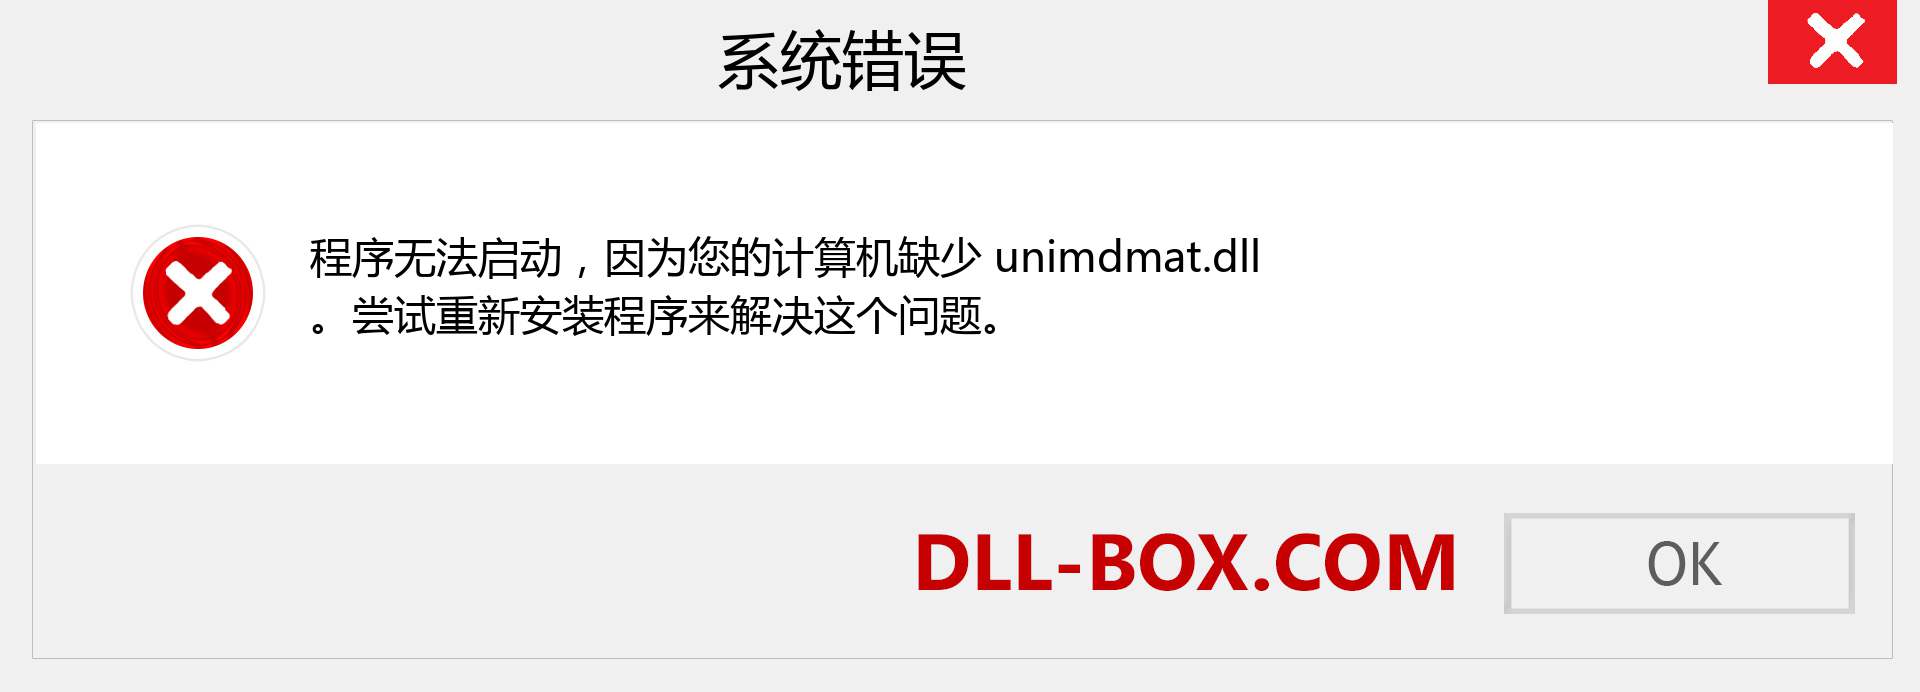 unimdmat.dll 文件丢失？。 适用于 Windows 7、8、10 的下载 - 修复 Windows、照片、图像上的 unimdmat dll 丢失错误